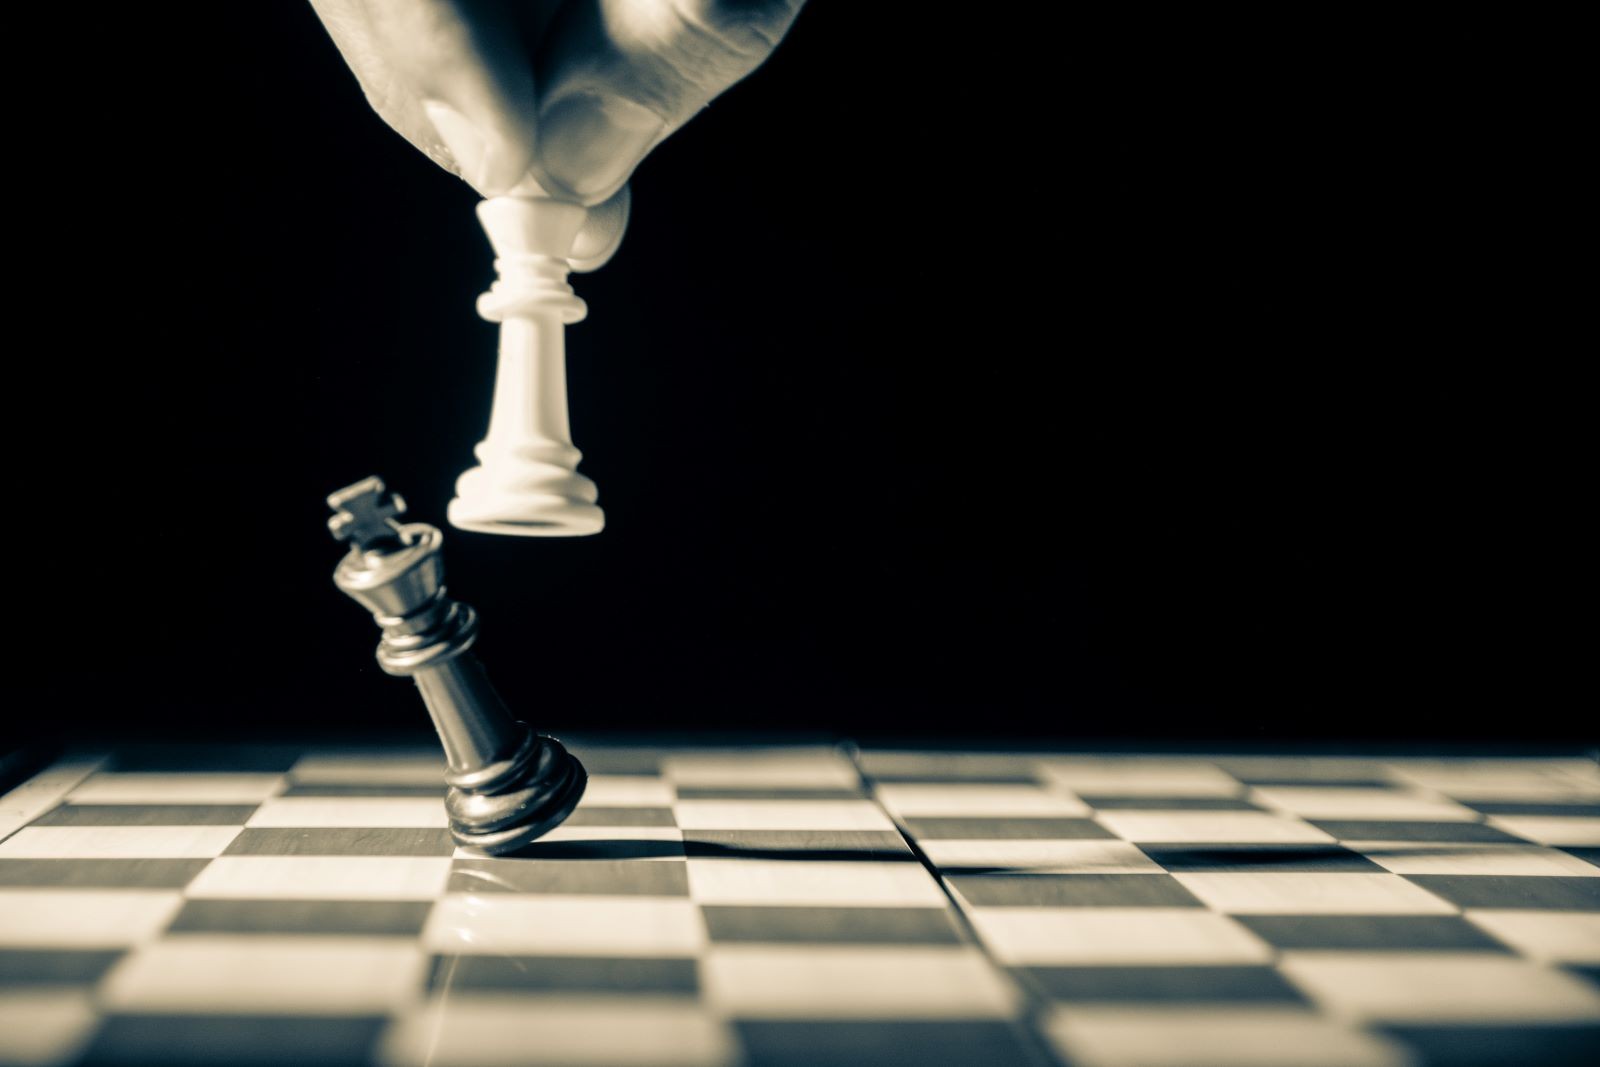 Λευκό πιόνι βασιλιά στο σκάκι ρίχνει μαυρό πιόνι βασιλιά